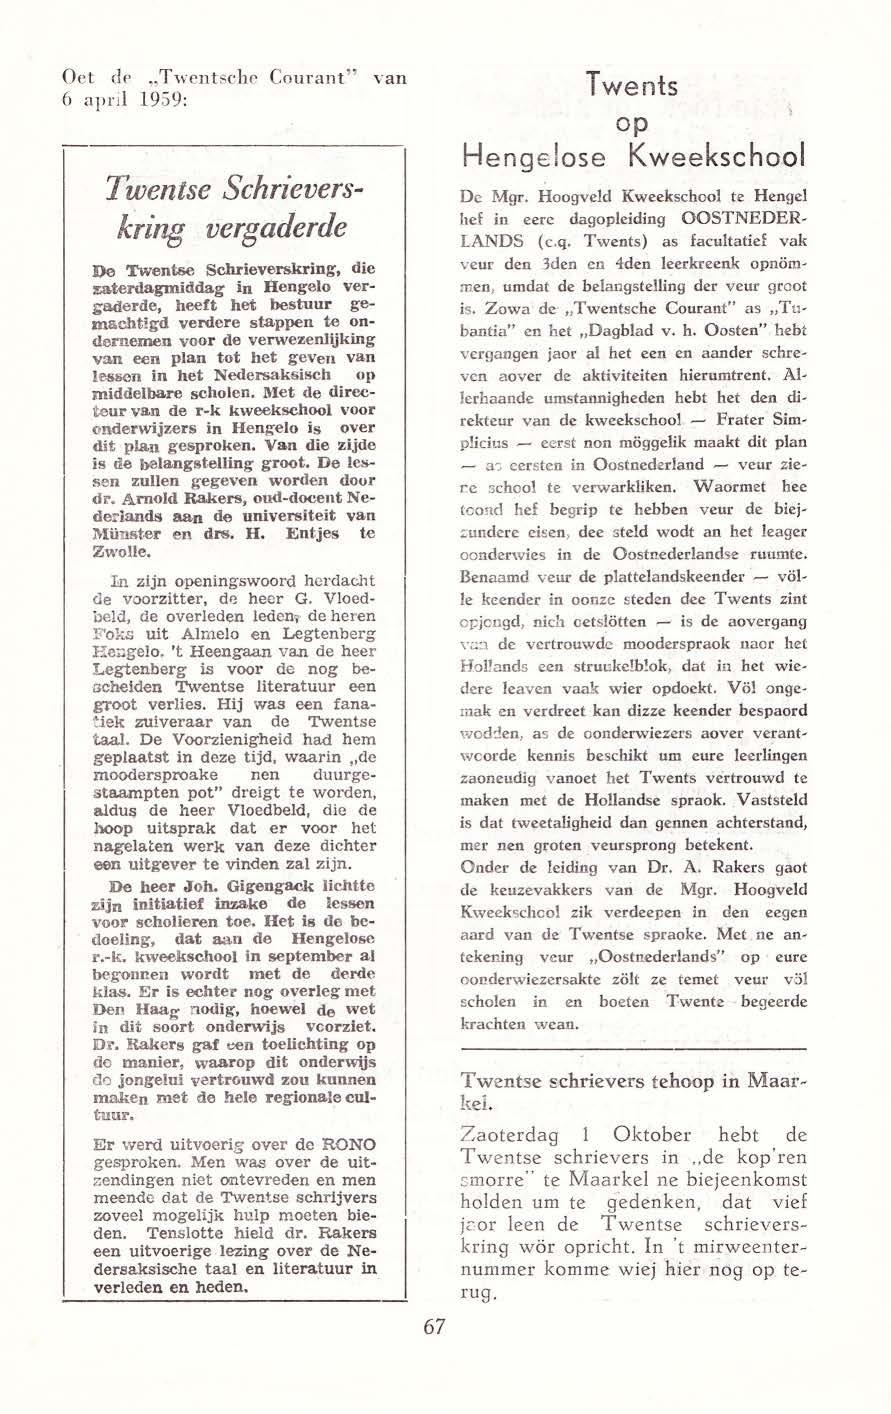 Oet de "Twent sche Courant" van 6 april 1959: Twentse Schrieverskring vergaderde De Twentse Schrieverskring, die zaterdagmiddag in Hengelo vergaderde, heeft het bestuur gemachtigd verdere stappen te